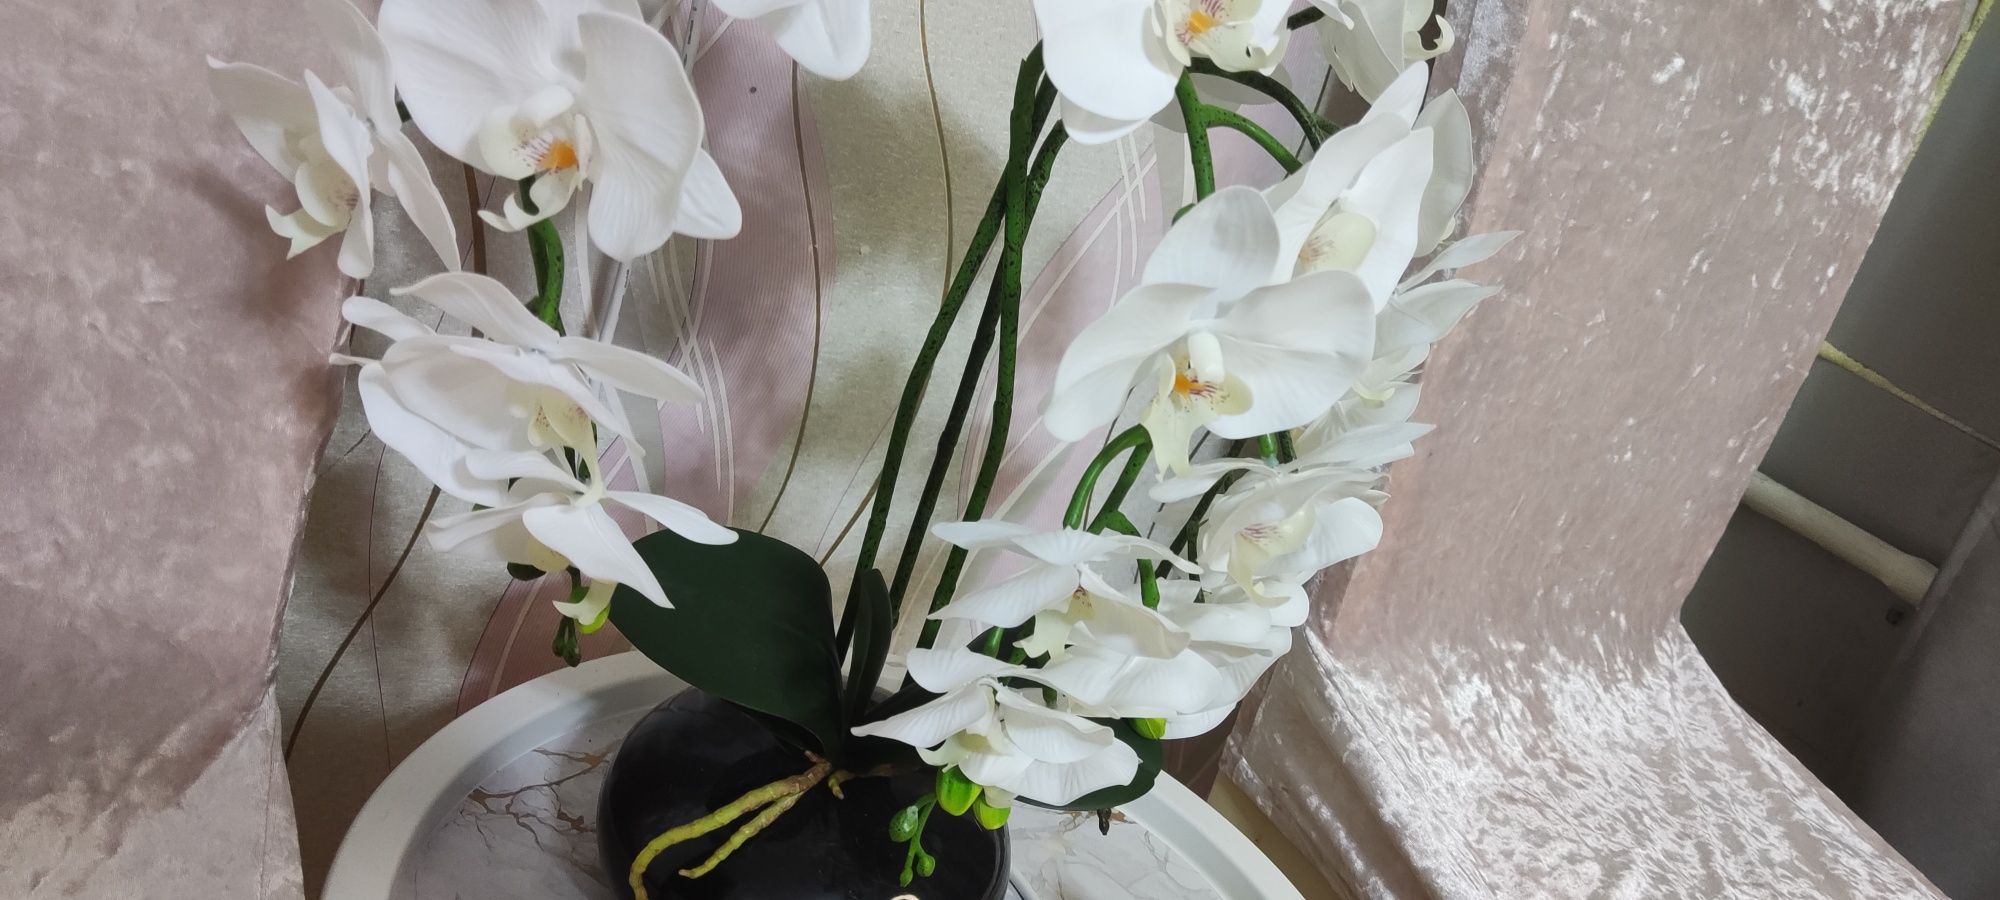 Искусственная орхидея белая реаличтичная